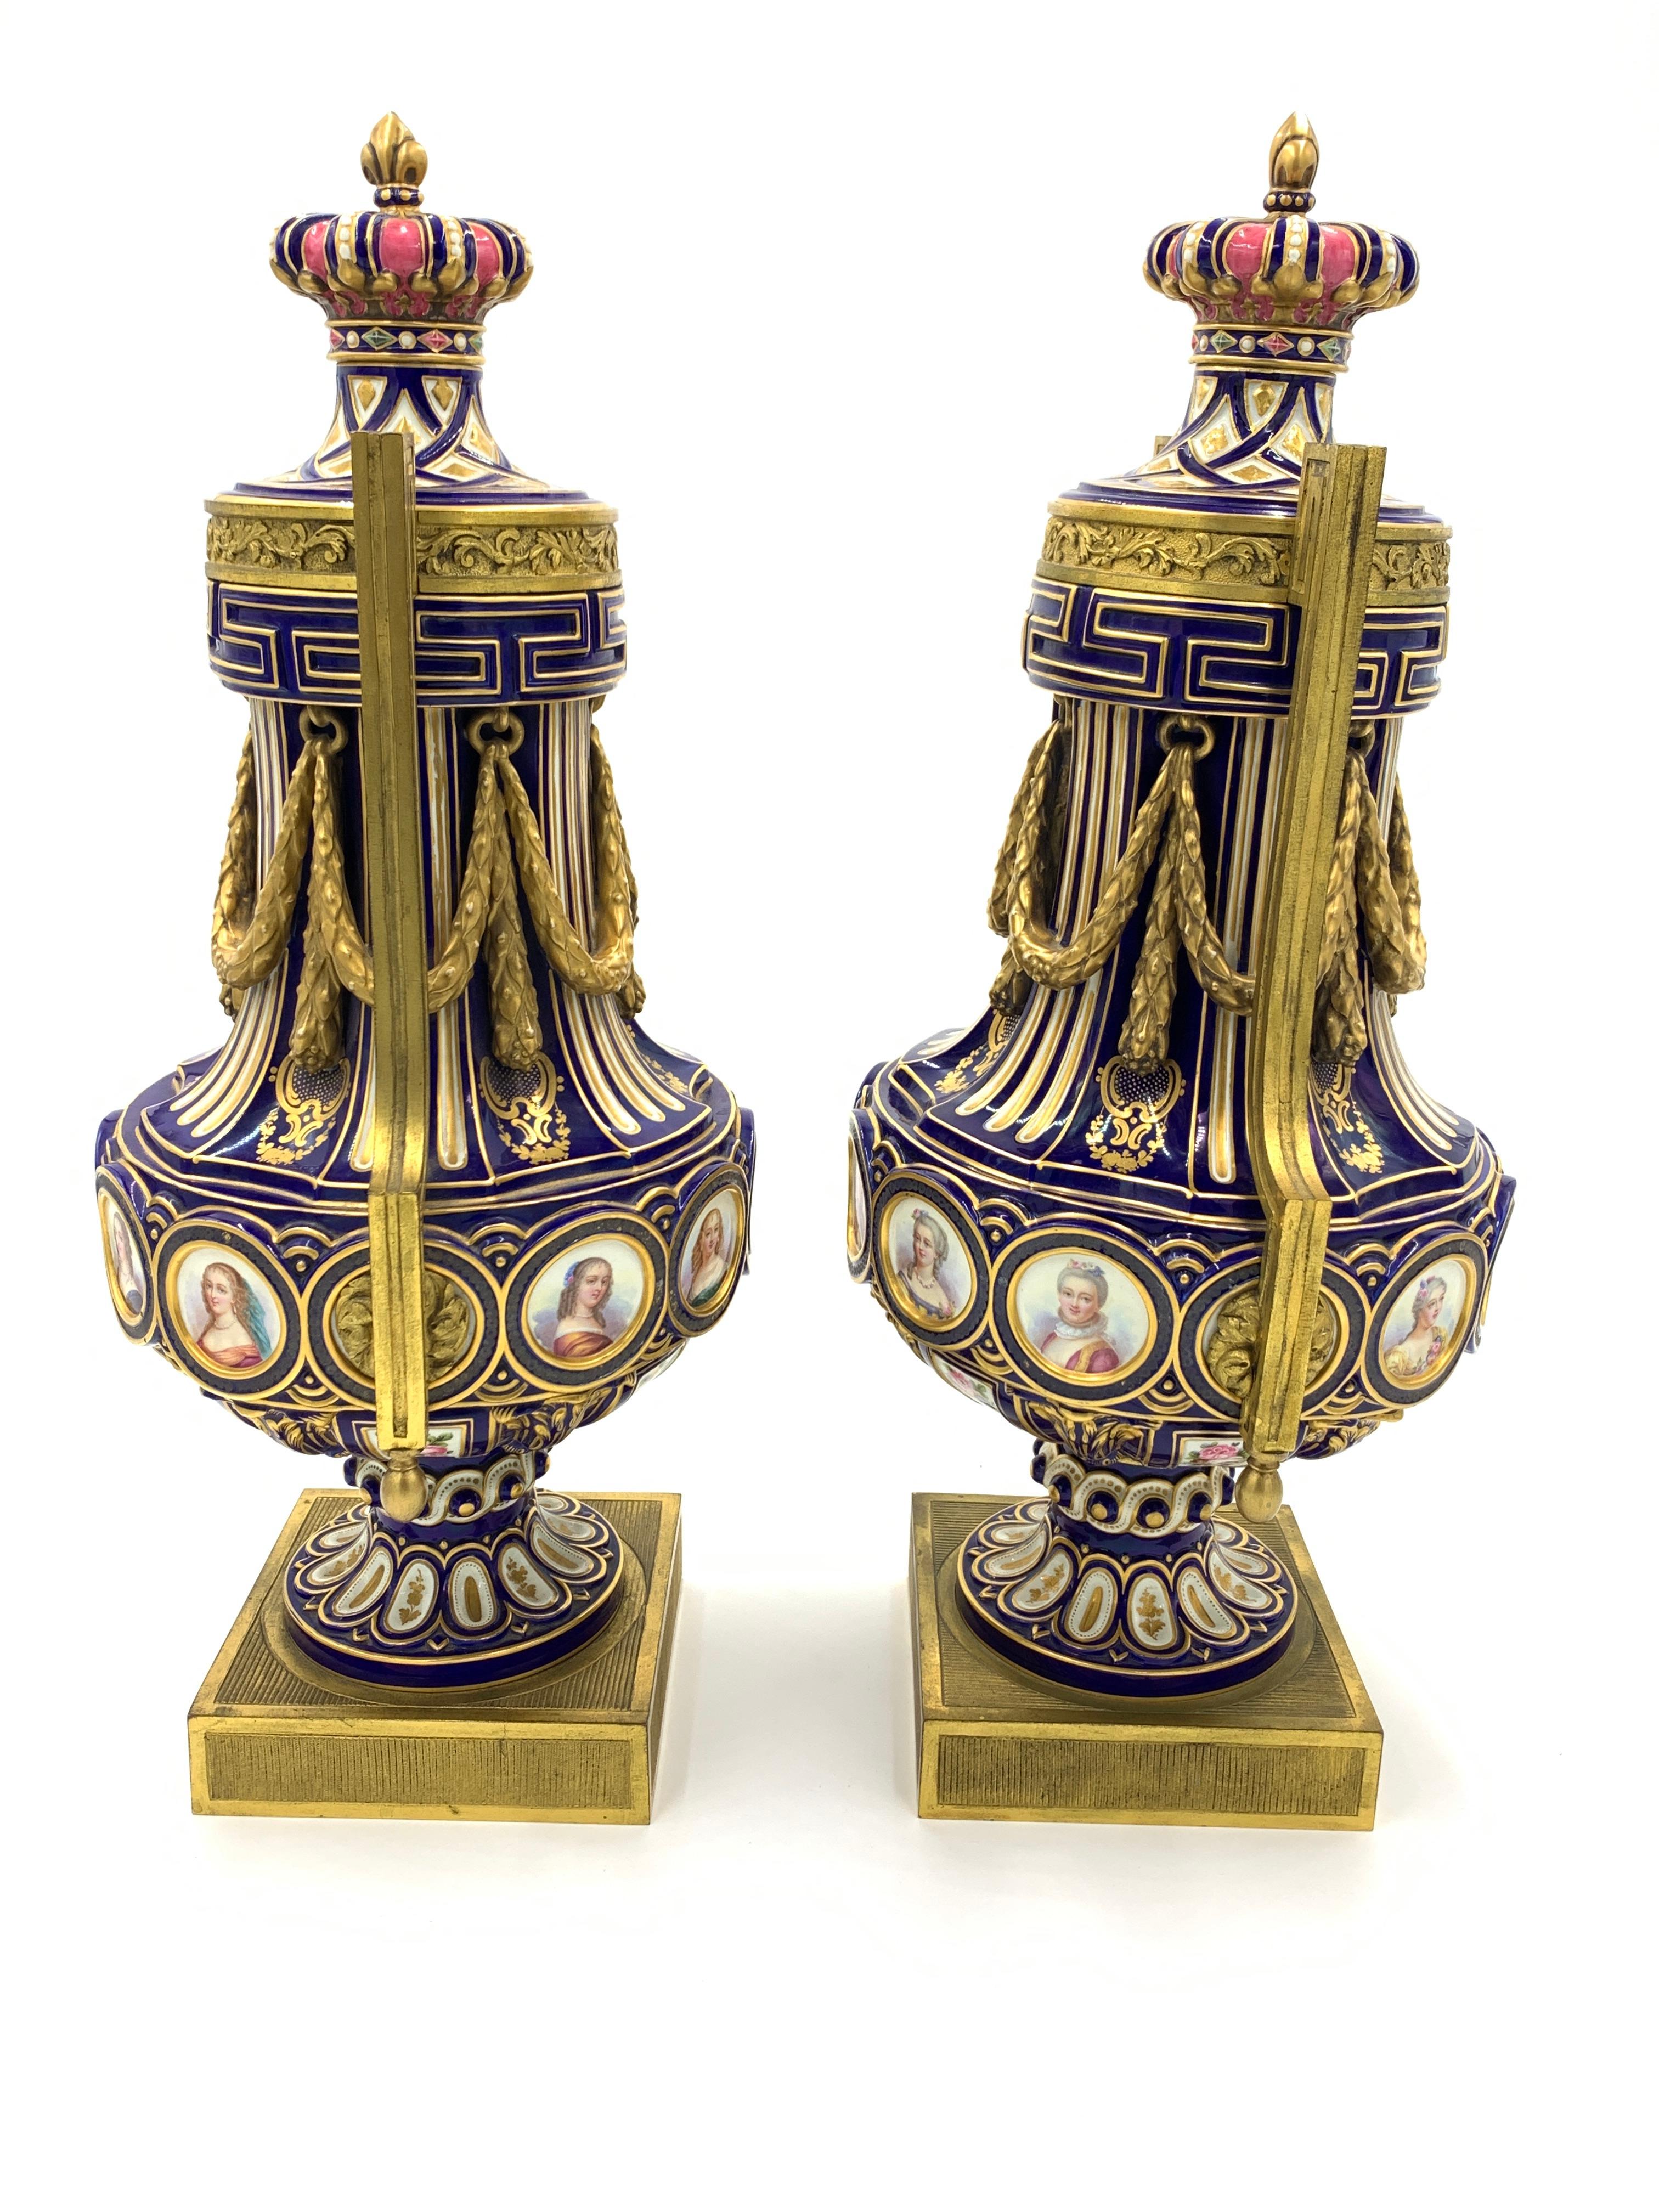 Exquise paire de vases de style Sèvres, portraits tout autour du corps ovoïde sur chaque vase.
 